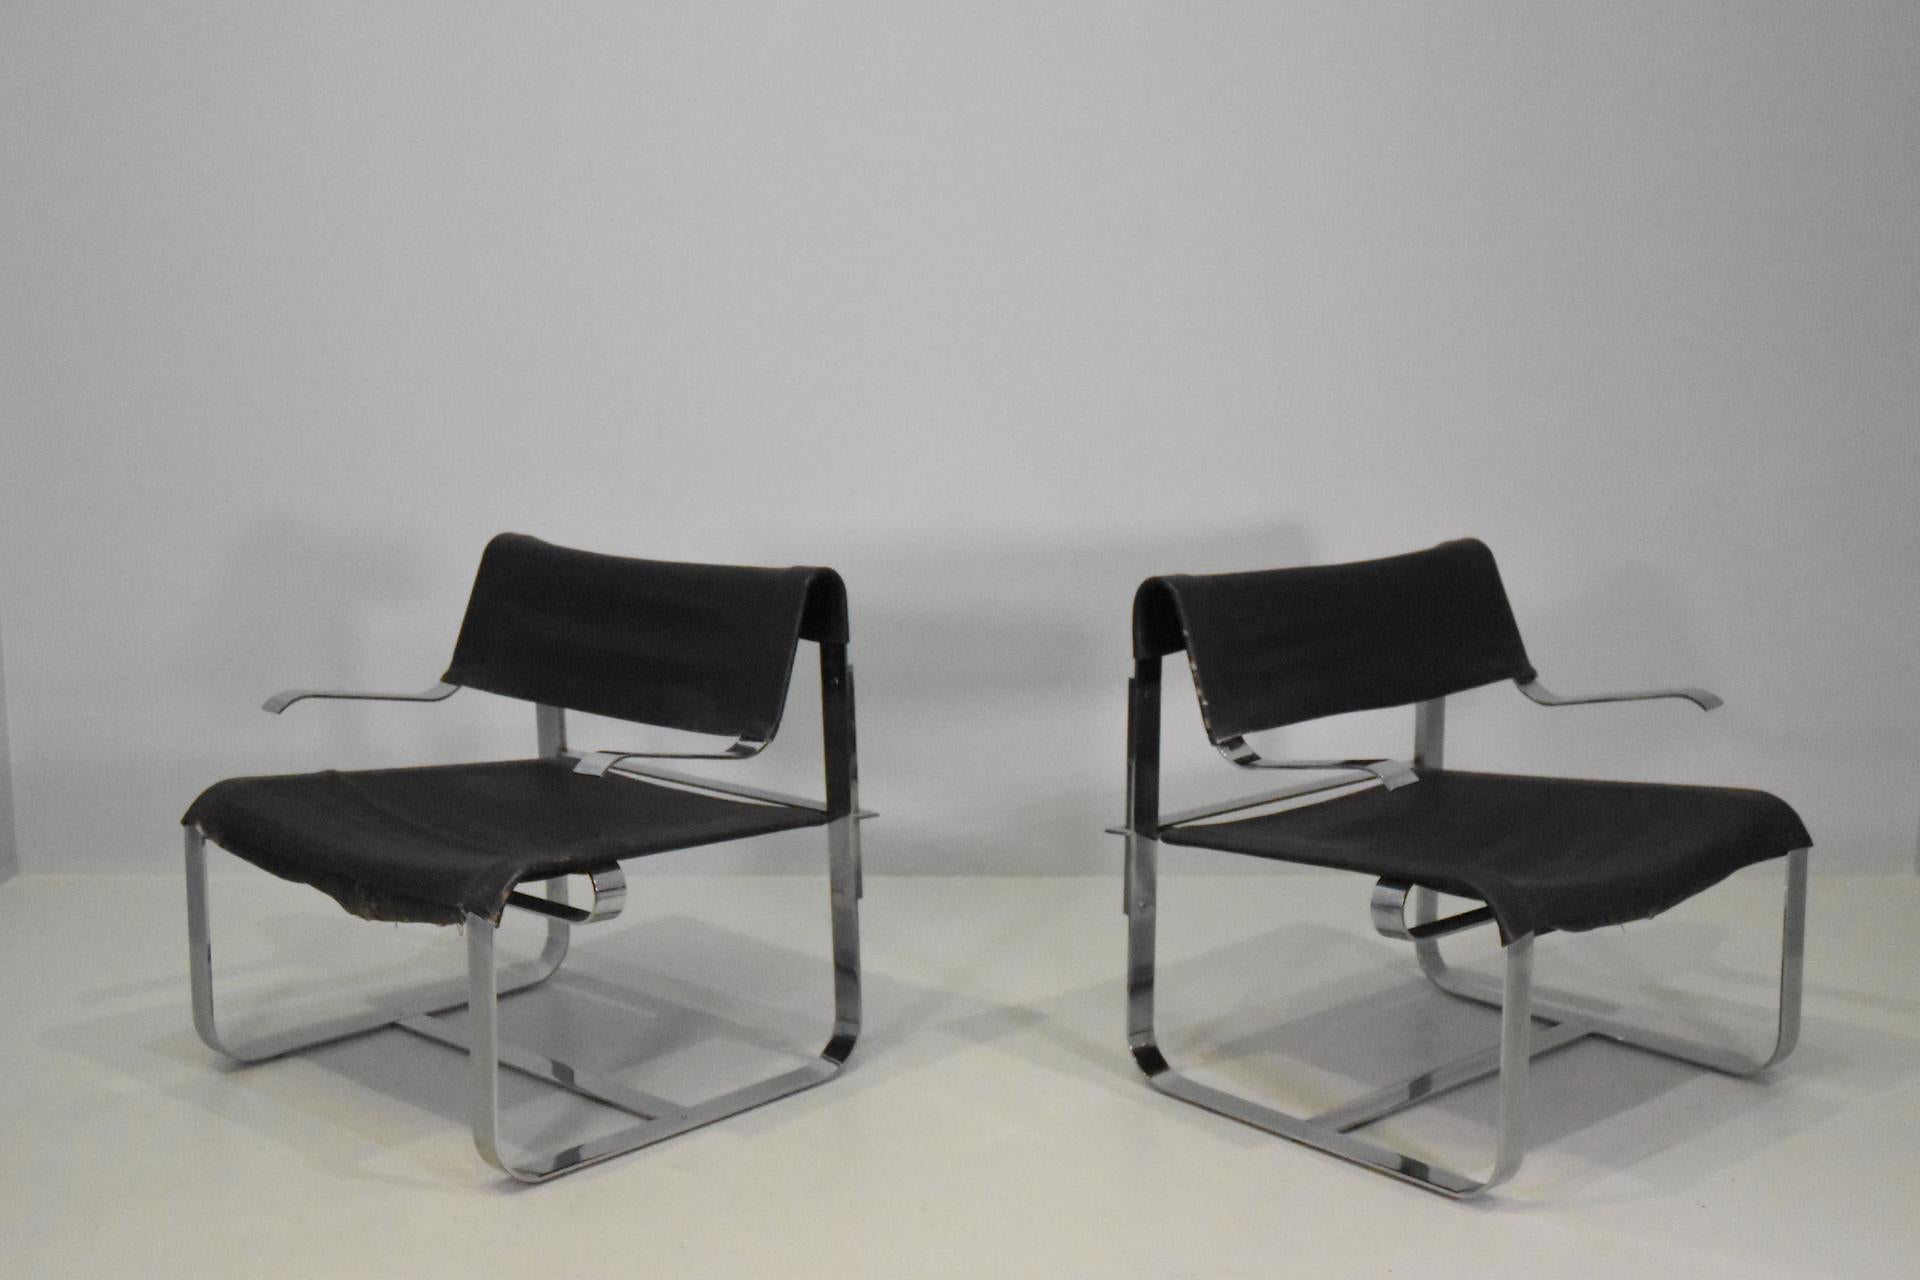 Sehr selten  Sessel Modell P100 Entworfen von Giovanni Offredi für Saporiti.
veröffentlicht